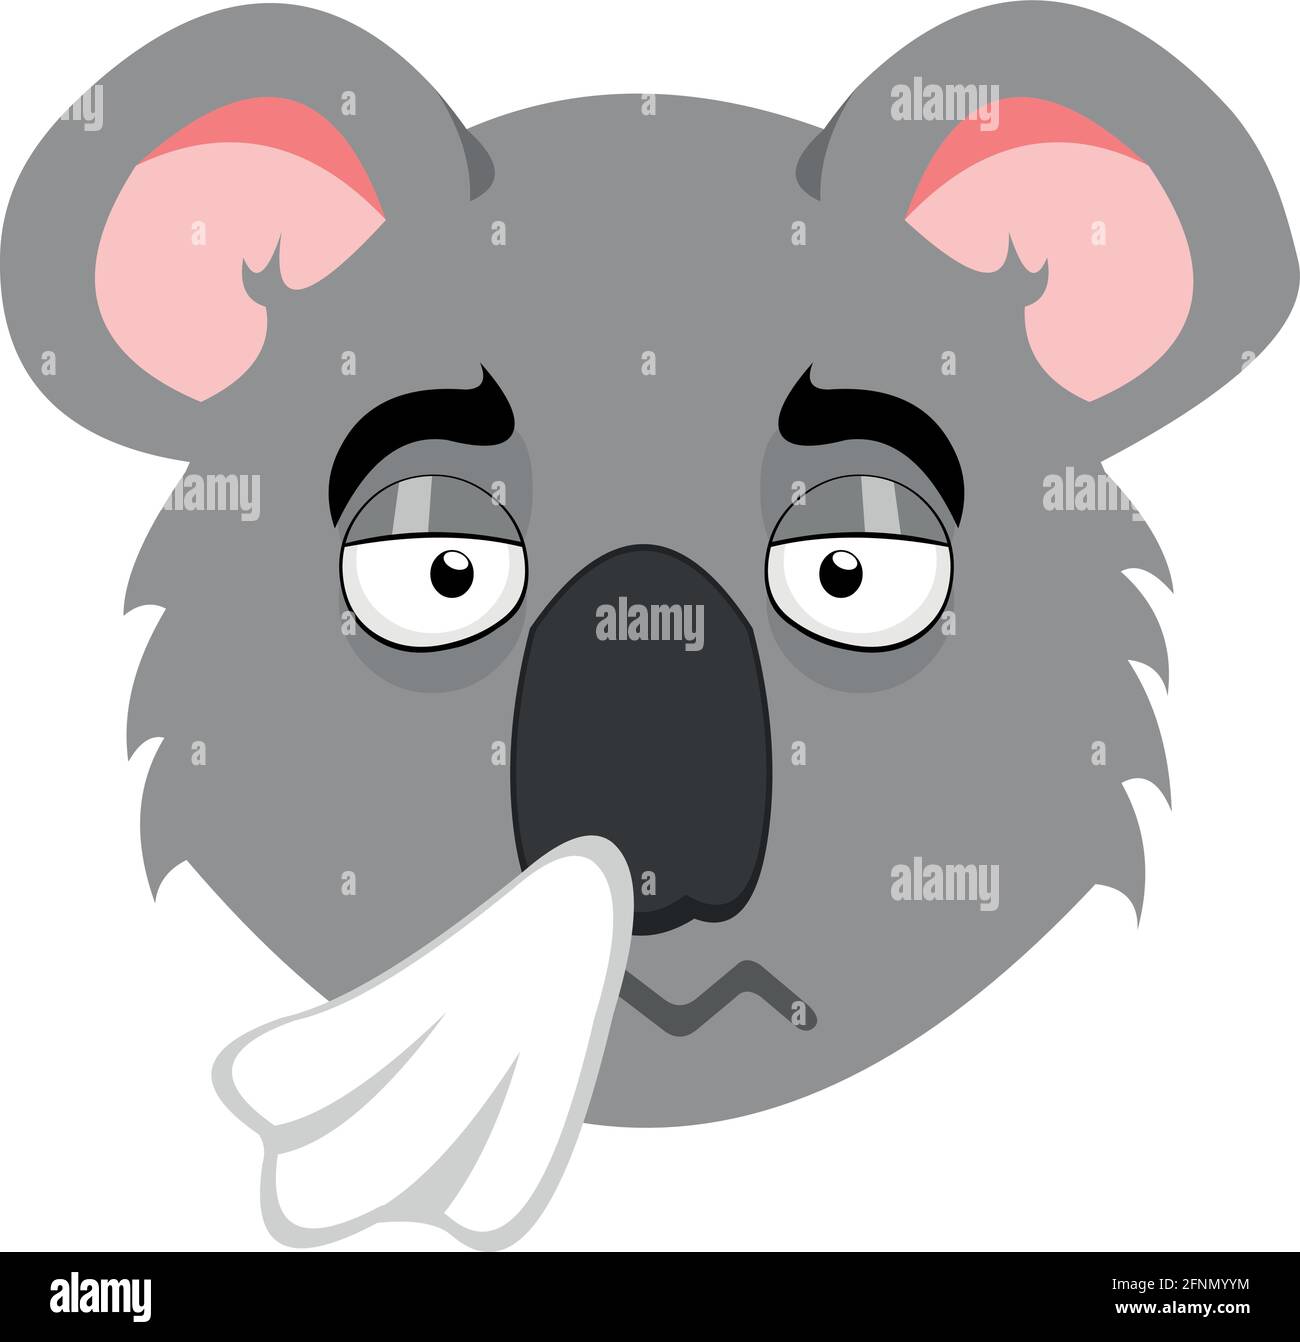 Illustrazione vettoriale fumetto emoticon della testa di un koala con espressione di esaurimento, un freddo e soffiare il naso con un tessuto Illustrazione Vettoriale